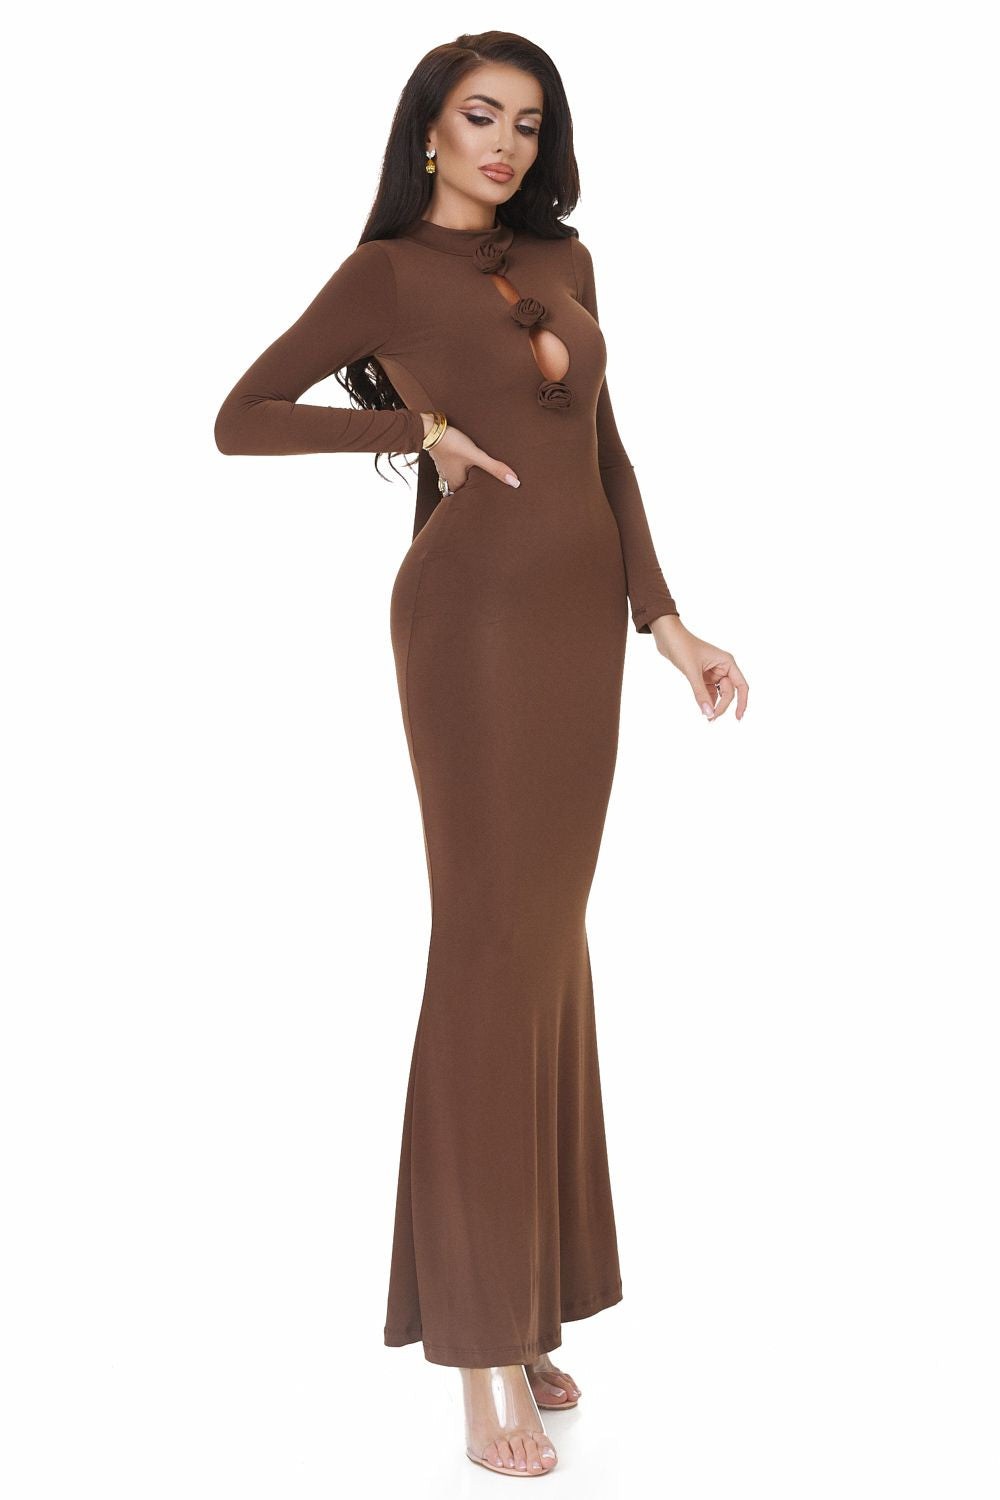 Ladies long brown lycra dress Glenday Bogas